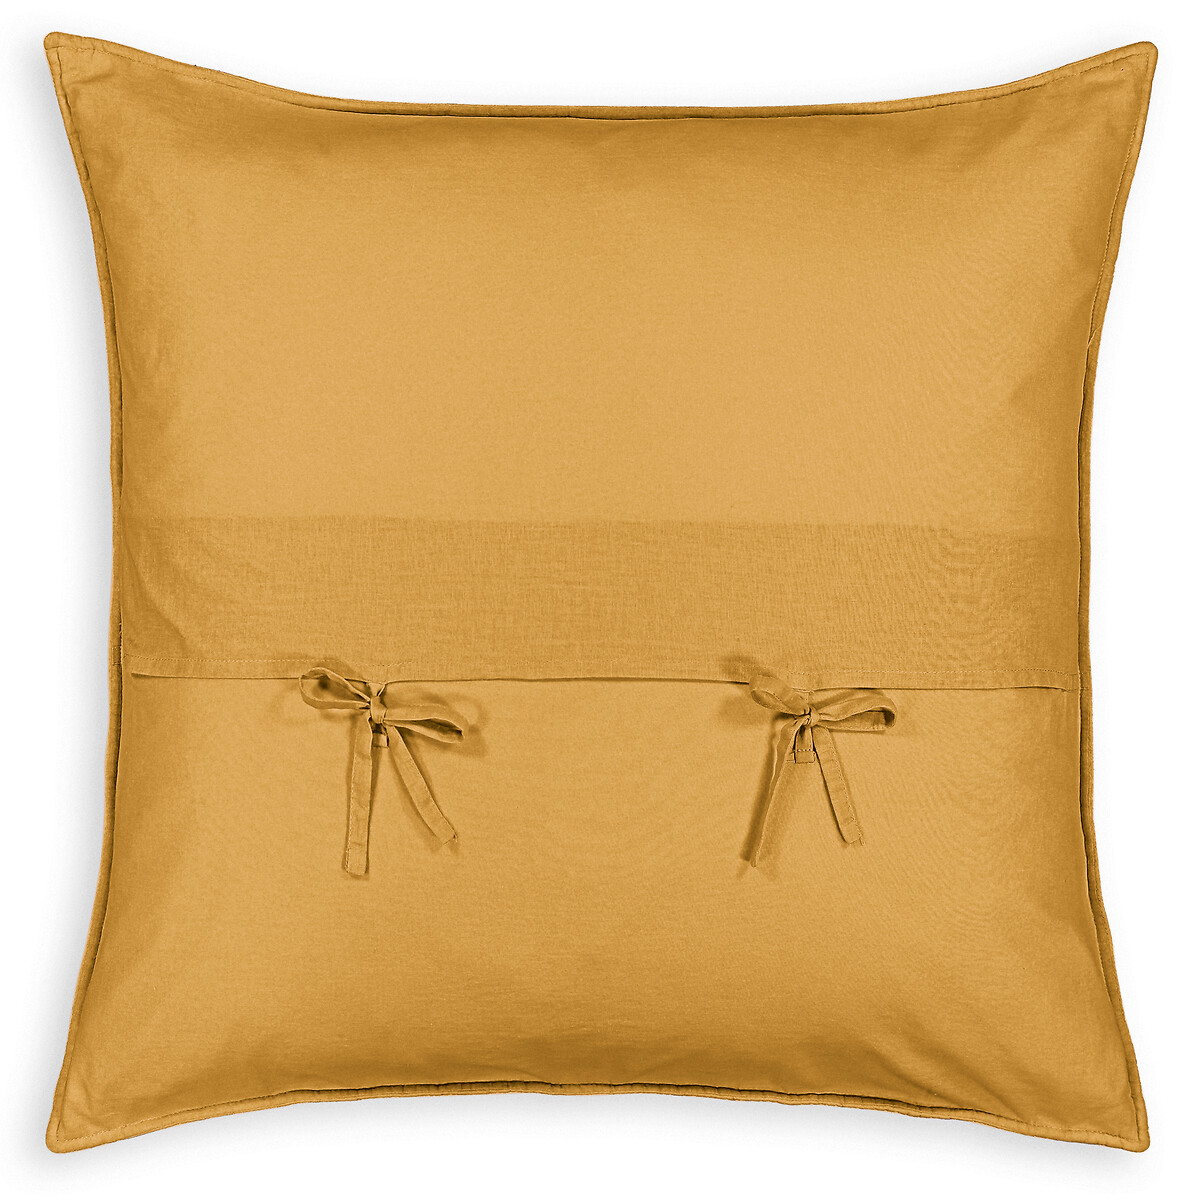 Чехол La Redoute На подушку  наволочка Zig-zag 65 x 65 см желтый, размер 65 x 65 см - фото 4